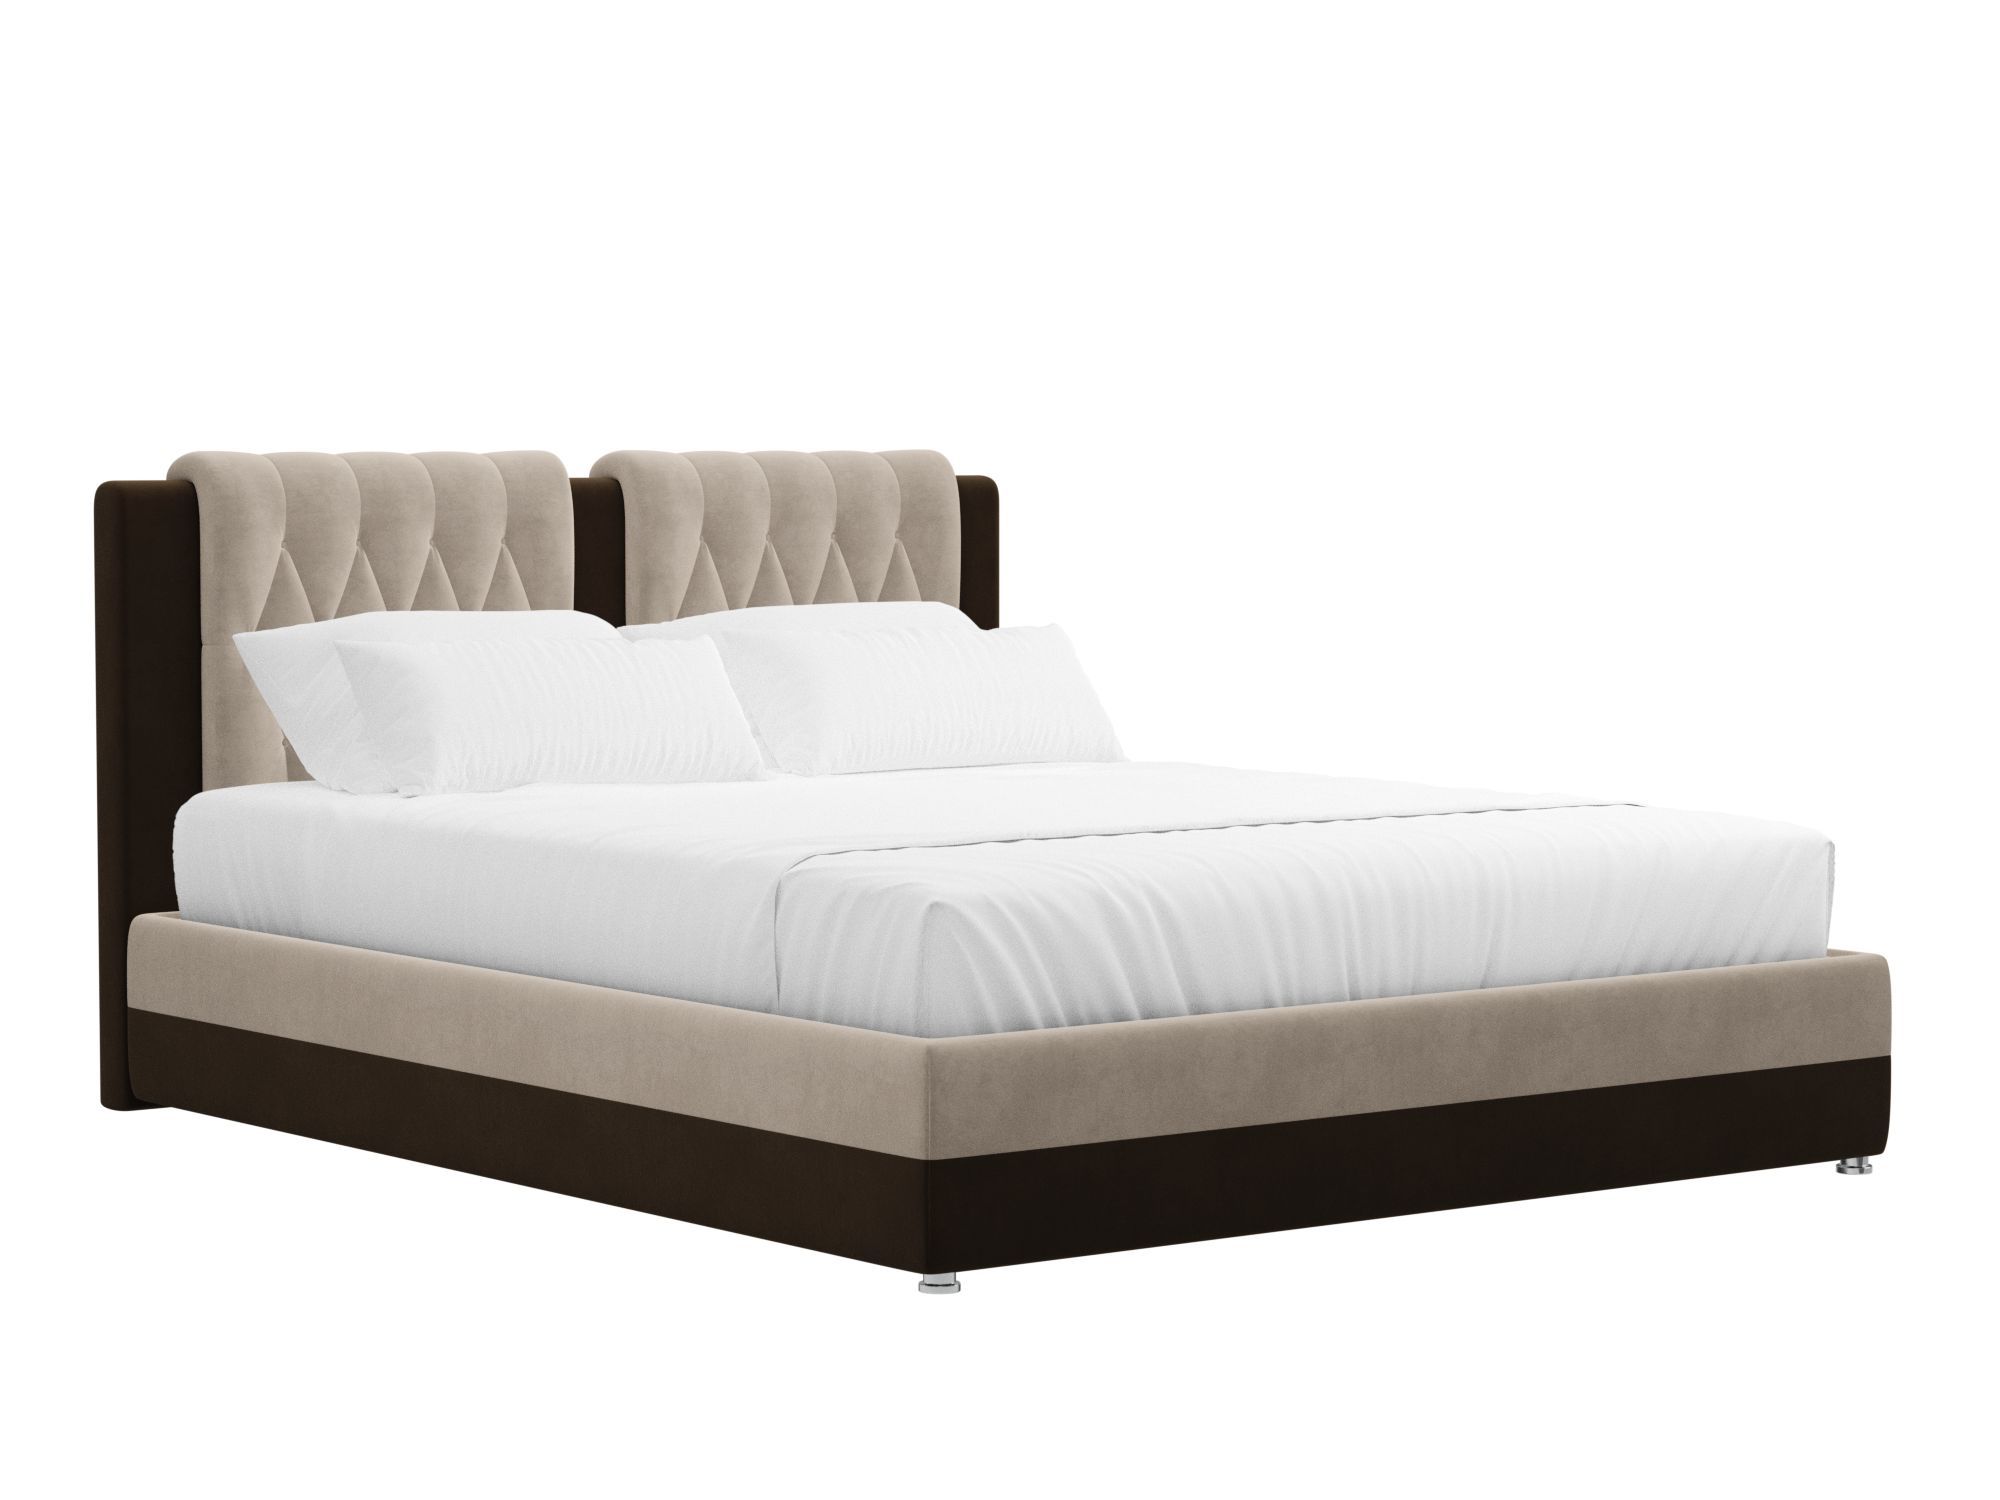 Кровать Камилла (160x200) Бежевый, Коричневый, ЛДСП кровать николь 160х200 фон коричневый коричневый бежевый мдф пленка пвх лдсп